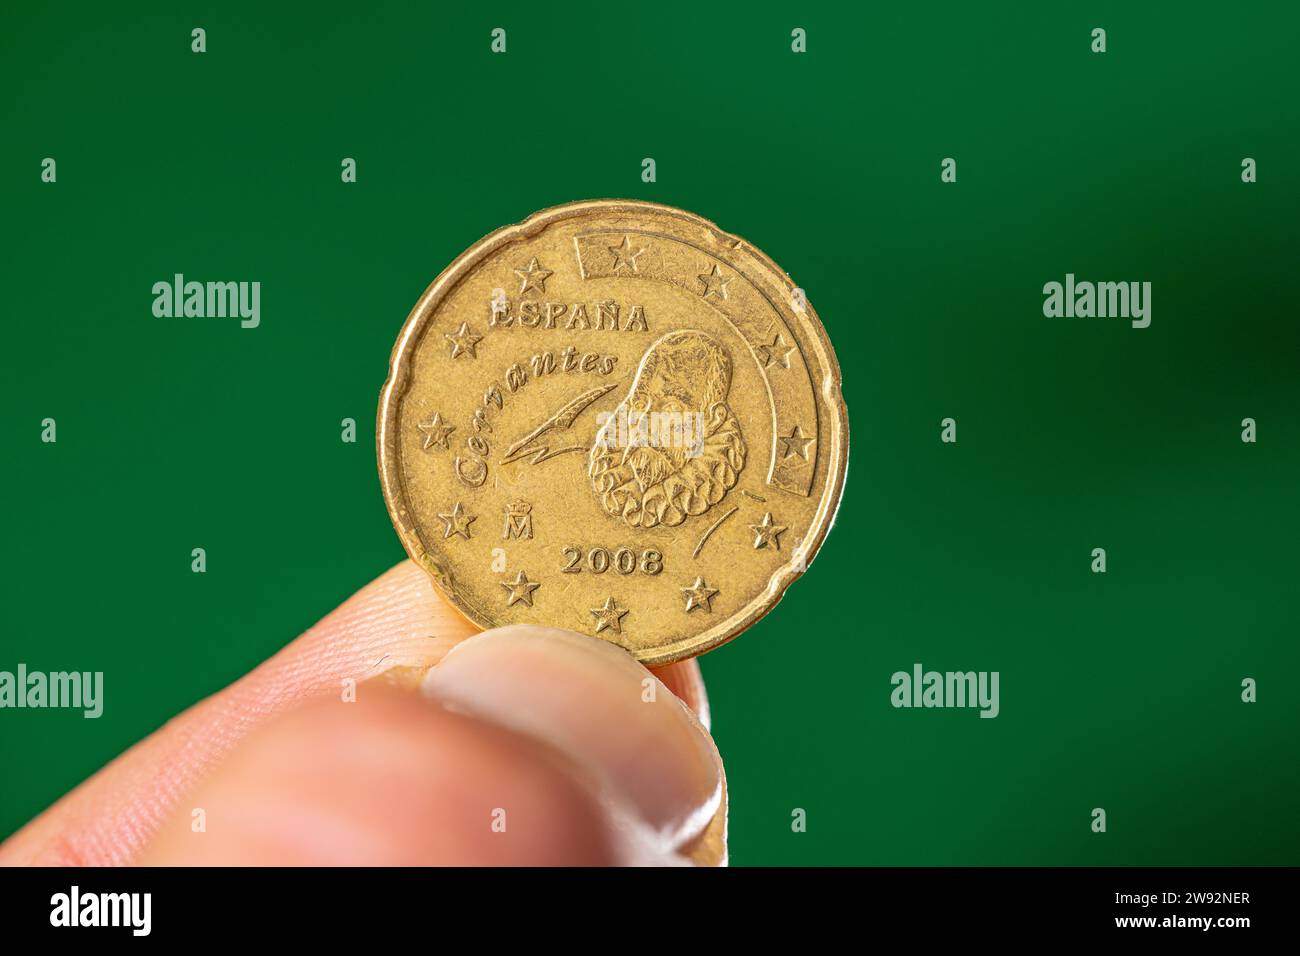 Münzkrone von 20 Eurocent mit der spanischen Darstellung von Cervantes zwischen Daumen und Zeigefinger. Stockfoto